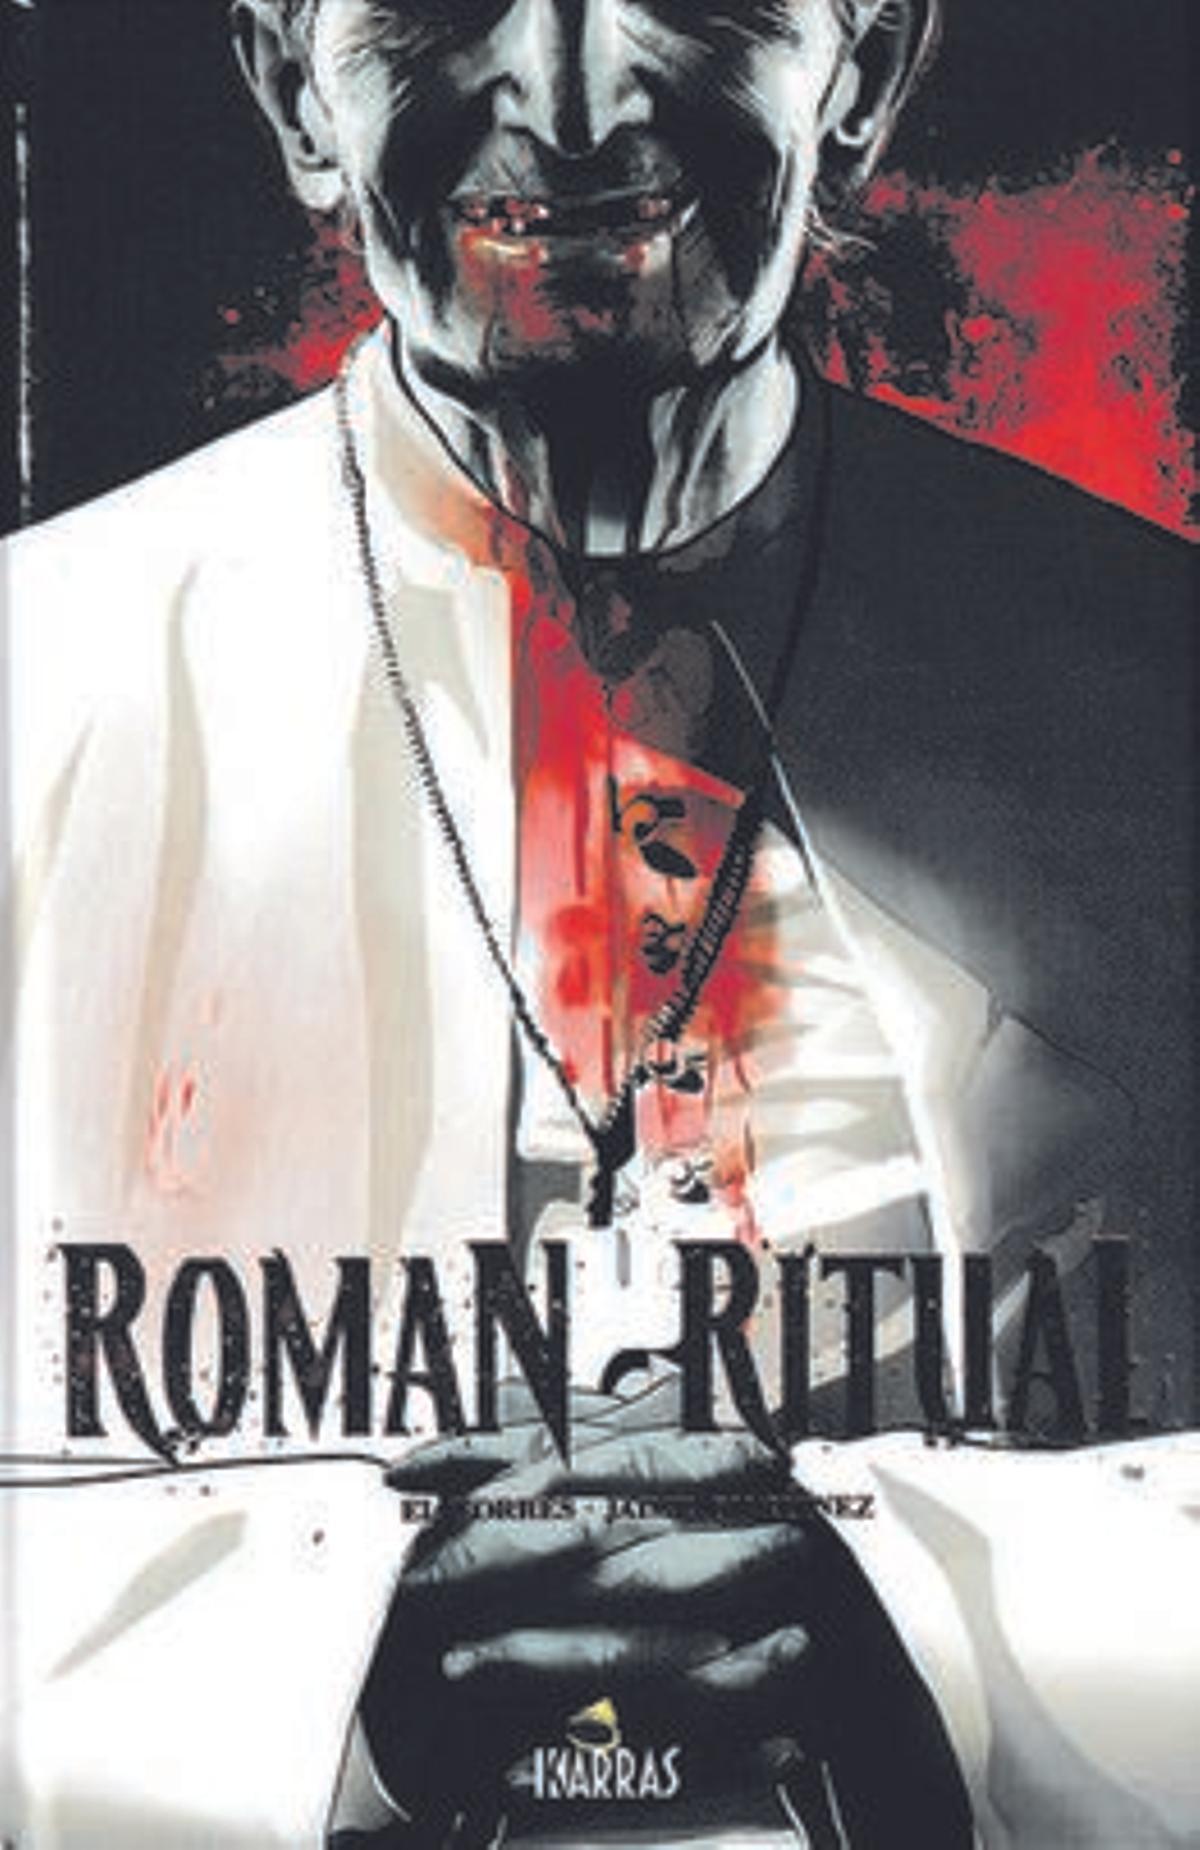 Portada del libro 'Roman Ritual', de El Torres, Jaime Martínez y Sandra Molina. Karras Comics, 120 páginas, 20 euros.